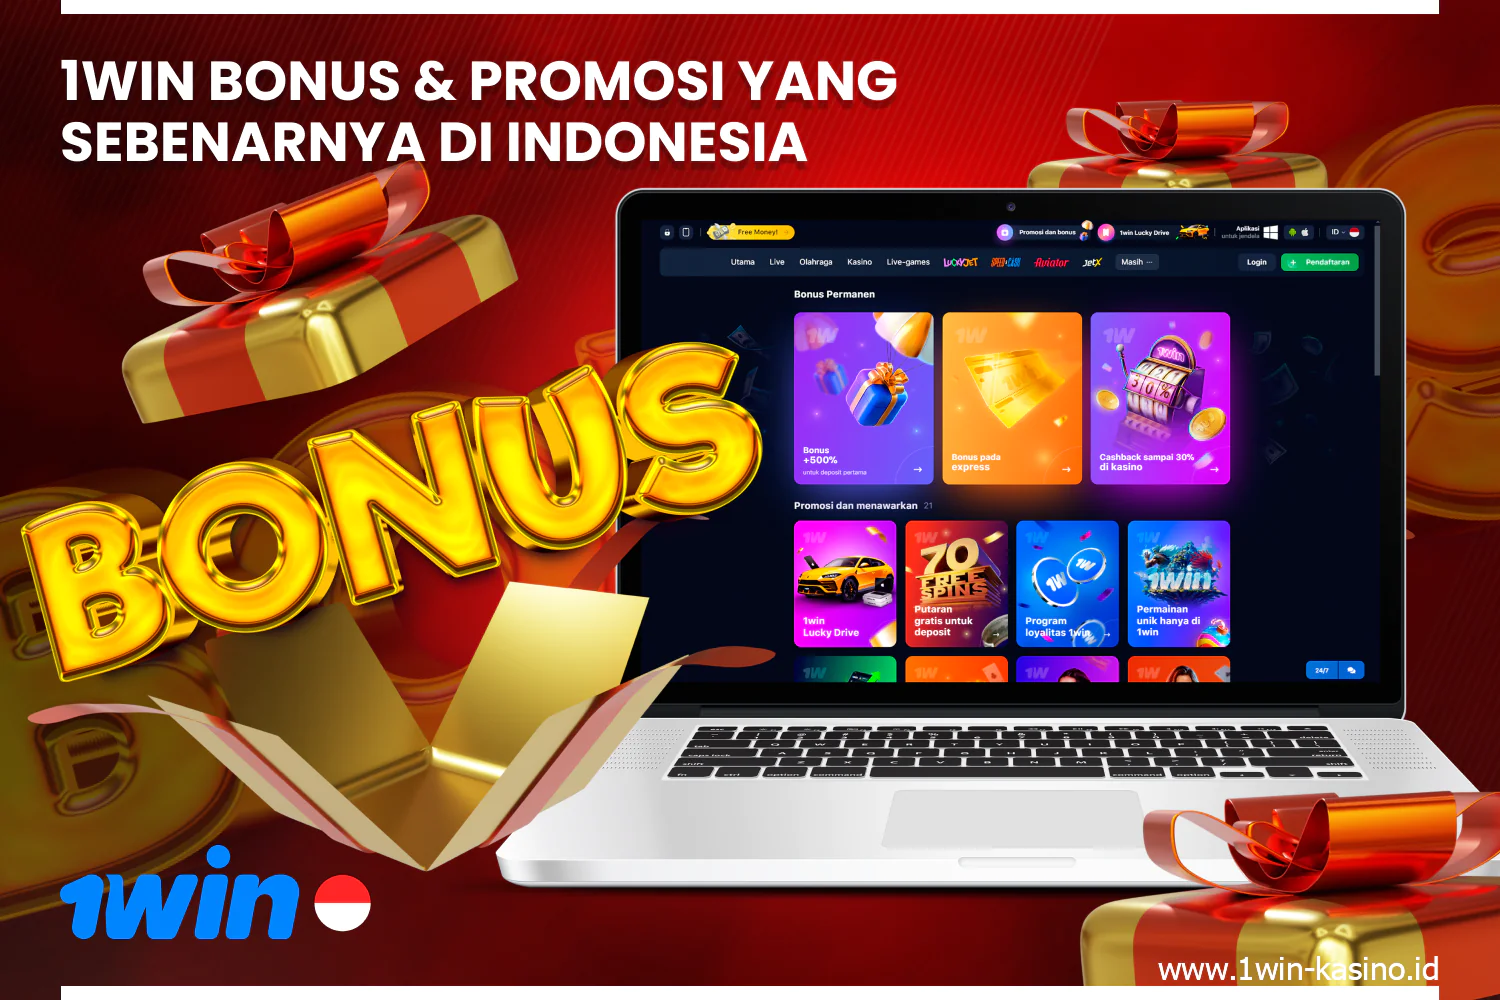 Bonus berlimpah dan berbagai promosi tersedia untuk pengguna 1win Indonesia